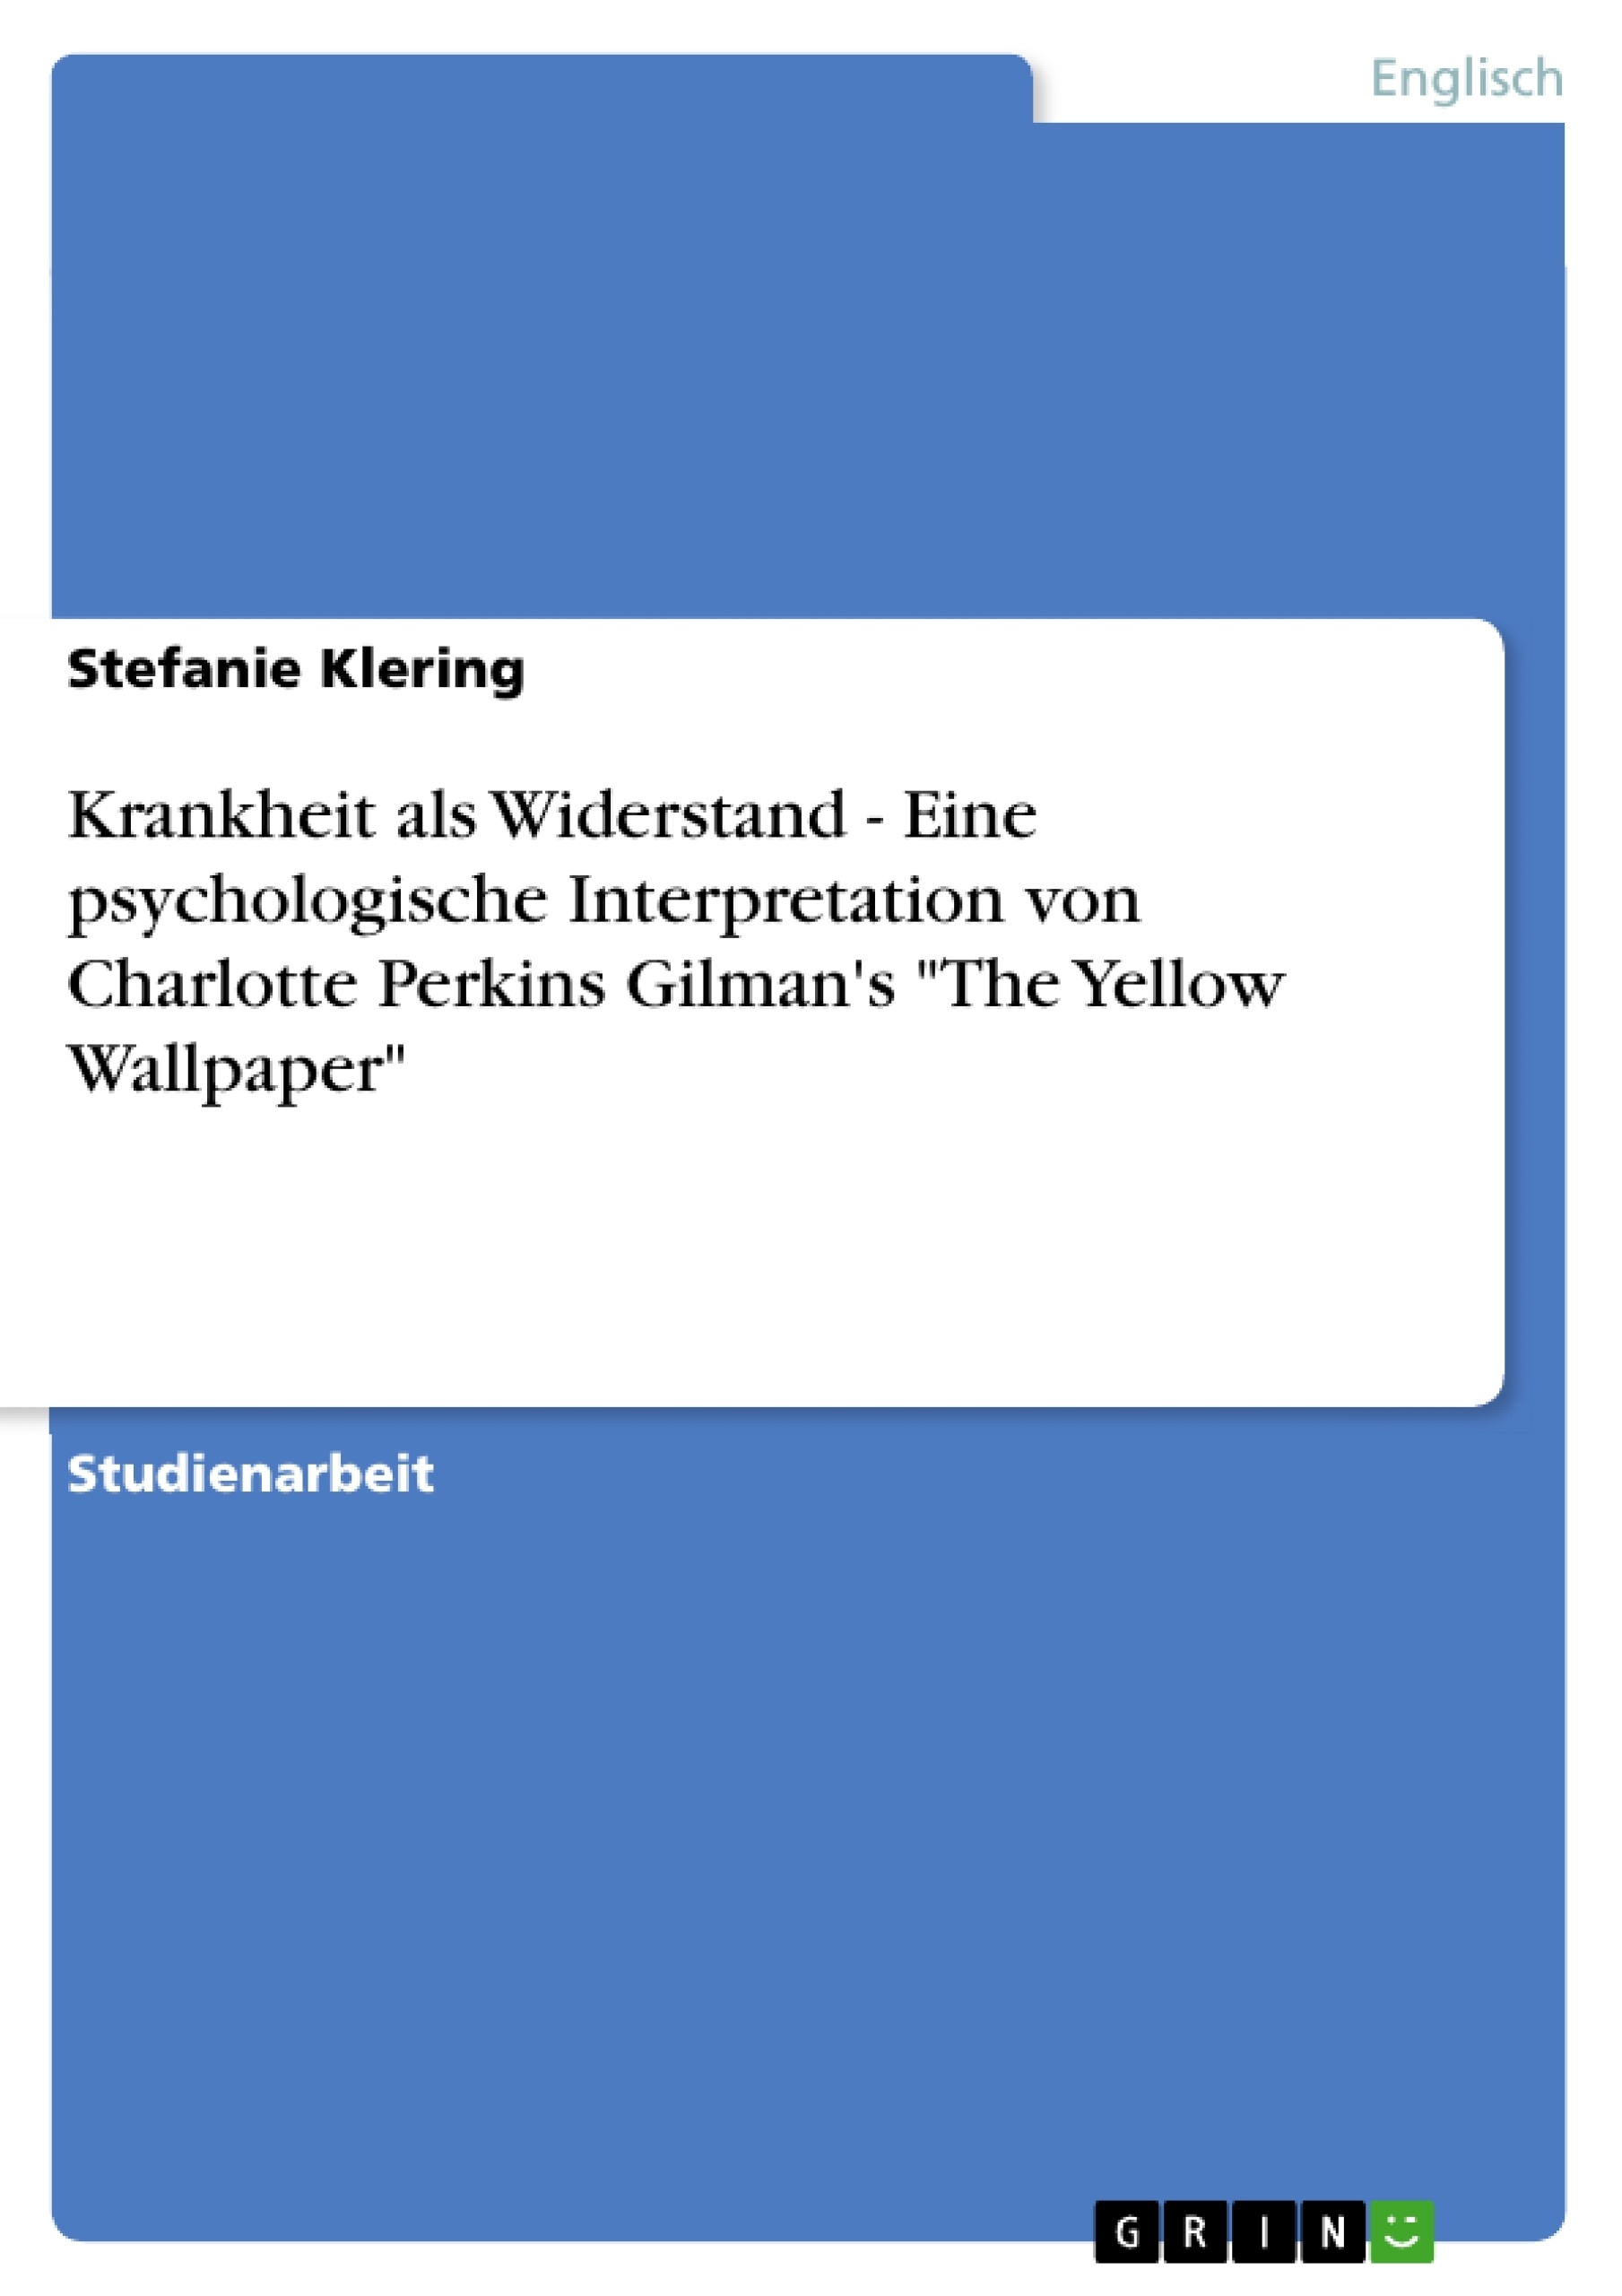 Título: Krankheit als Widerstand - Eine psychologische Interpretation von Charlotte Perkins Gilman's "The Yellow Wallpaper"